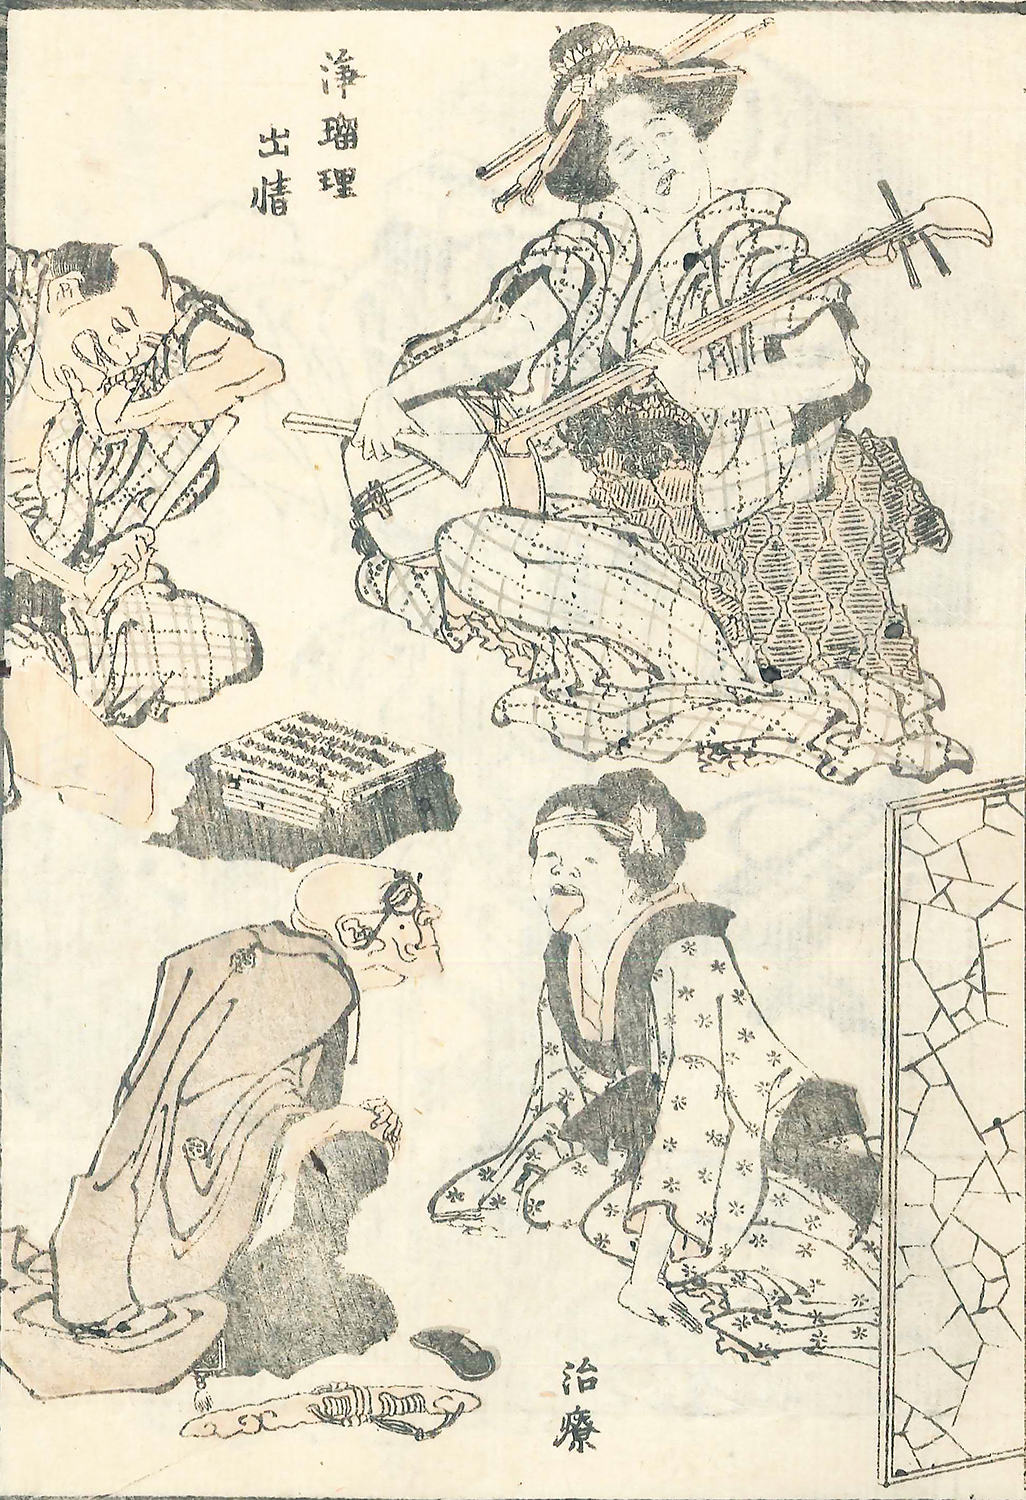 Katsushika Hokusai, Medical Treatment, from Sketches by Hokusai vol. 12, Sumida Hokusai Museum